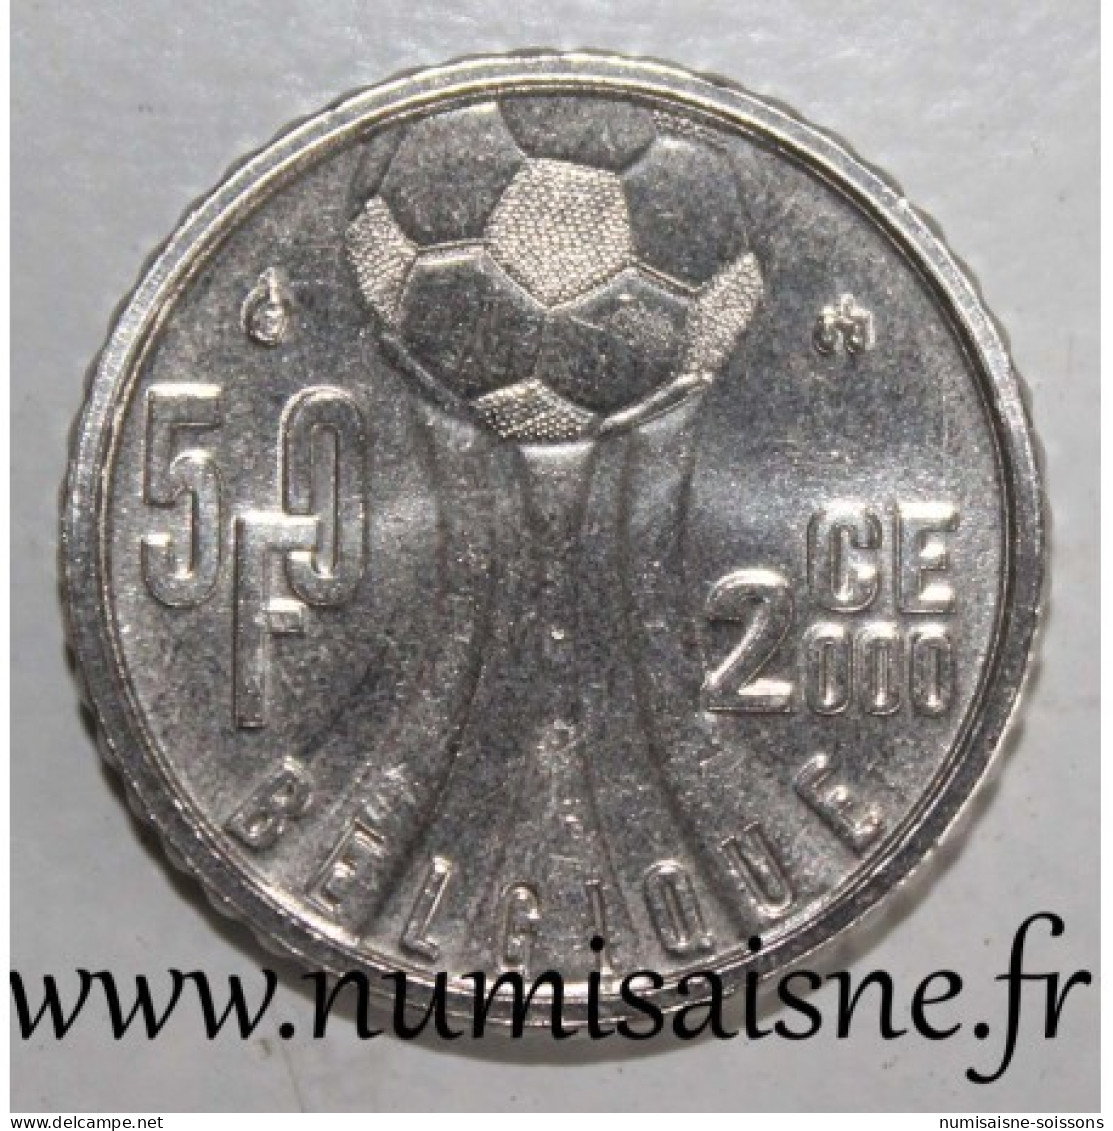 BELGIQUE - KM 213.1 - 50 FRANCS 2000 - Championnat D'Europe De Football - LÉGENDE FRANCAISE - SPL - 50 Francs